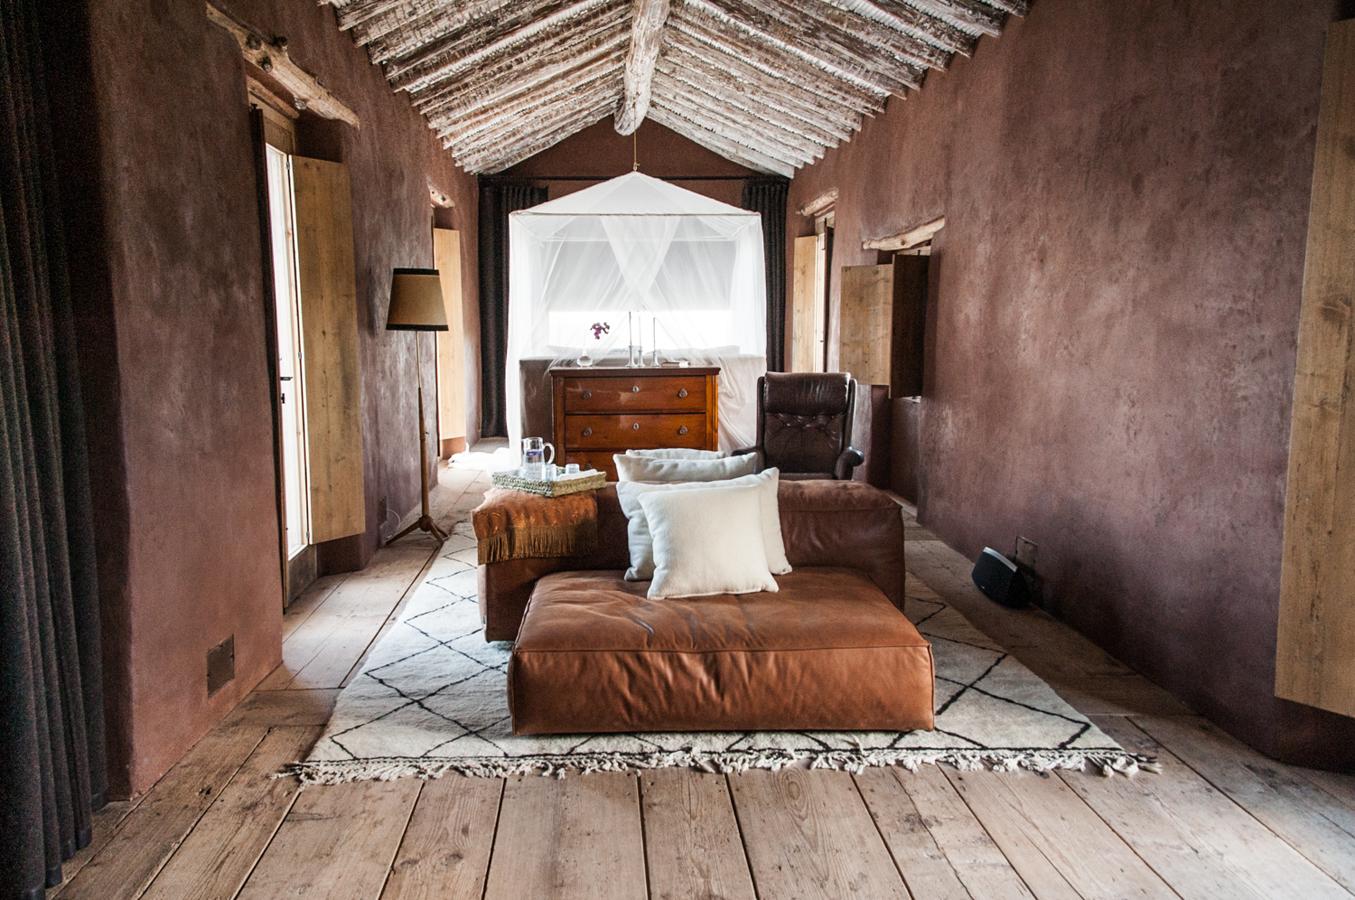 El cortijo de La Donaira cuenta con 8 habitaciones exclusivas y diferentes. Aunque para el Pause Festival los asistentes dispondrán de diferentes tipos de alojamiento: en suite de lujo, en caravana o en tienda de campaña.